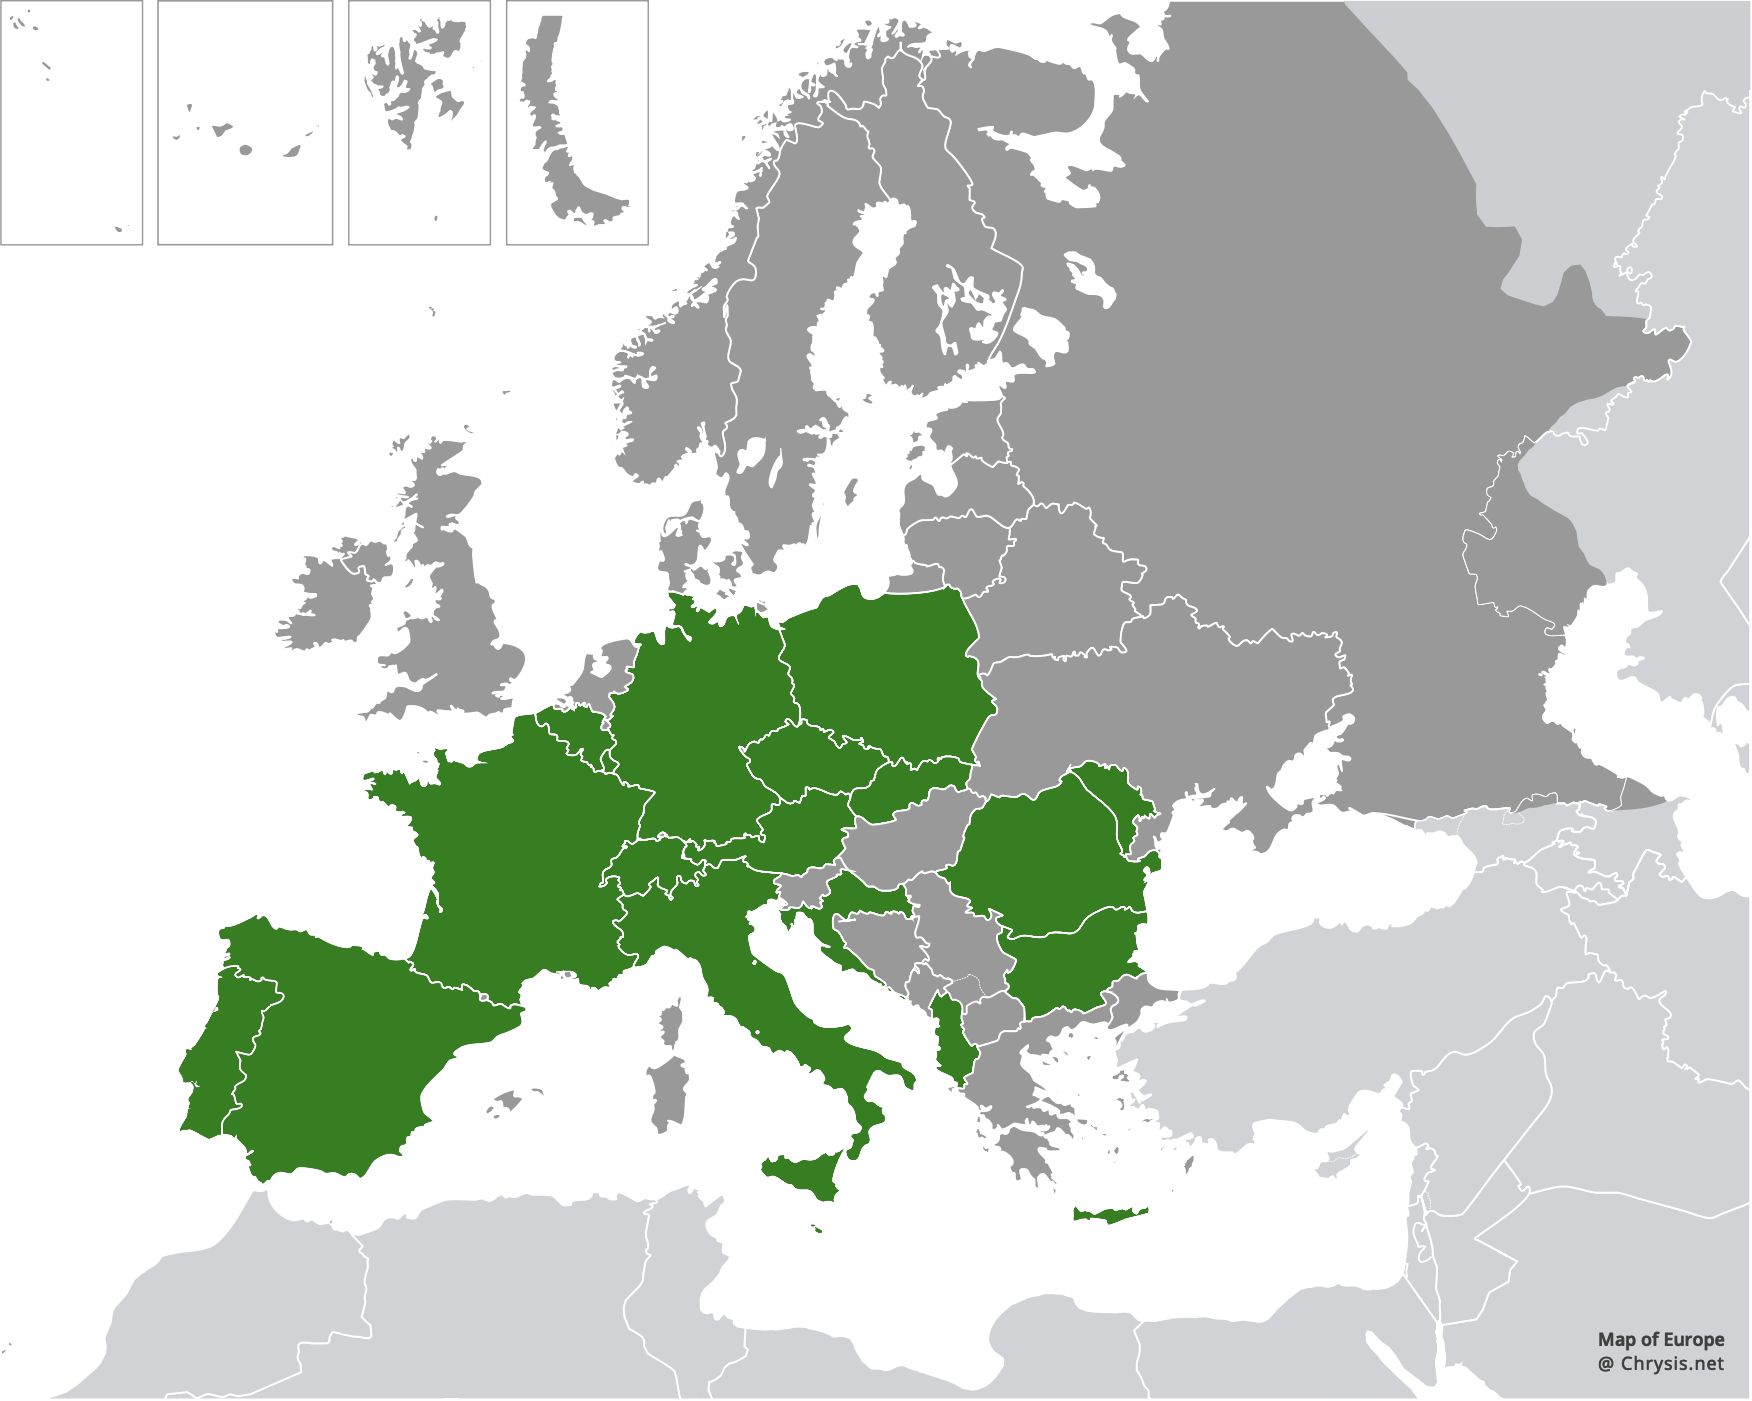 European distribution of Chrysis germari